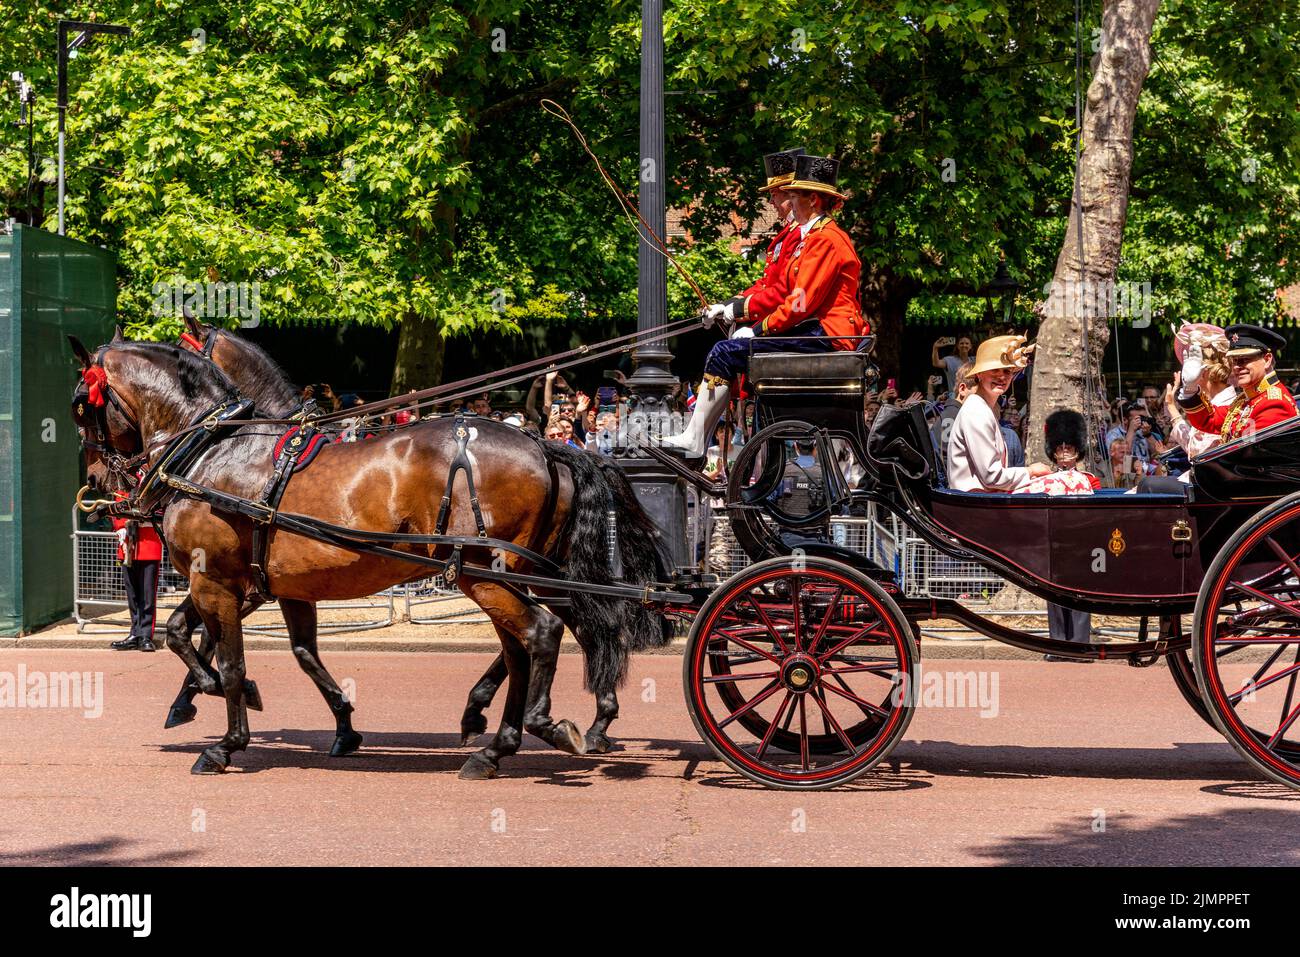 Los miembros de la familia real británica regresan a lo largo del centro comercial en un carruaje tirado por caballos después de asistir a la ceremonia de Trooping the Colour, el nacimiento de las reinas Foto de stock